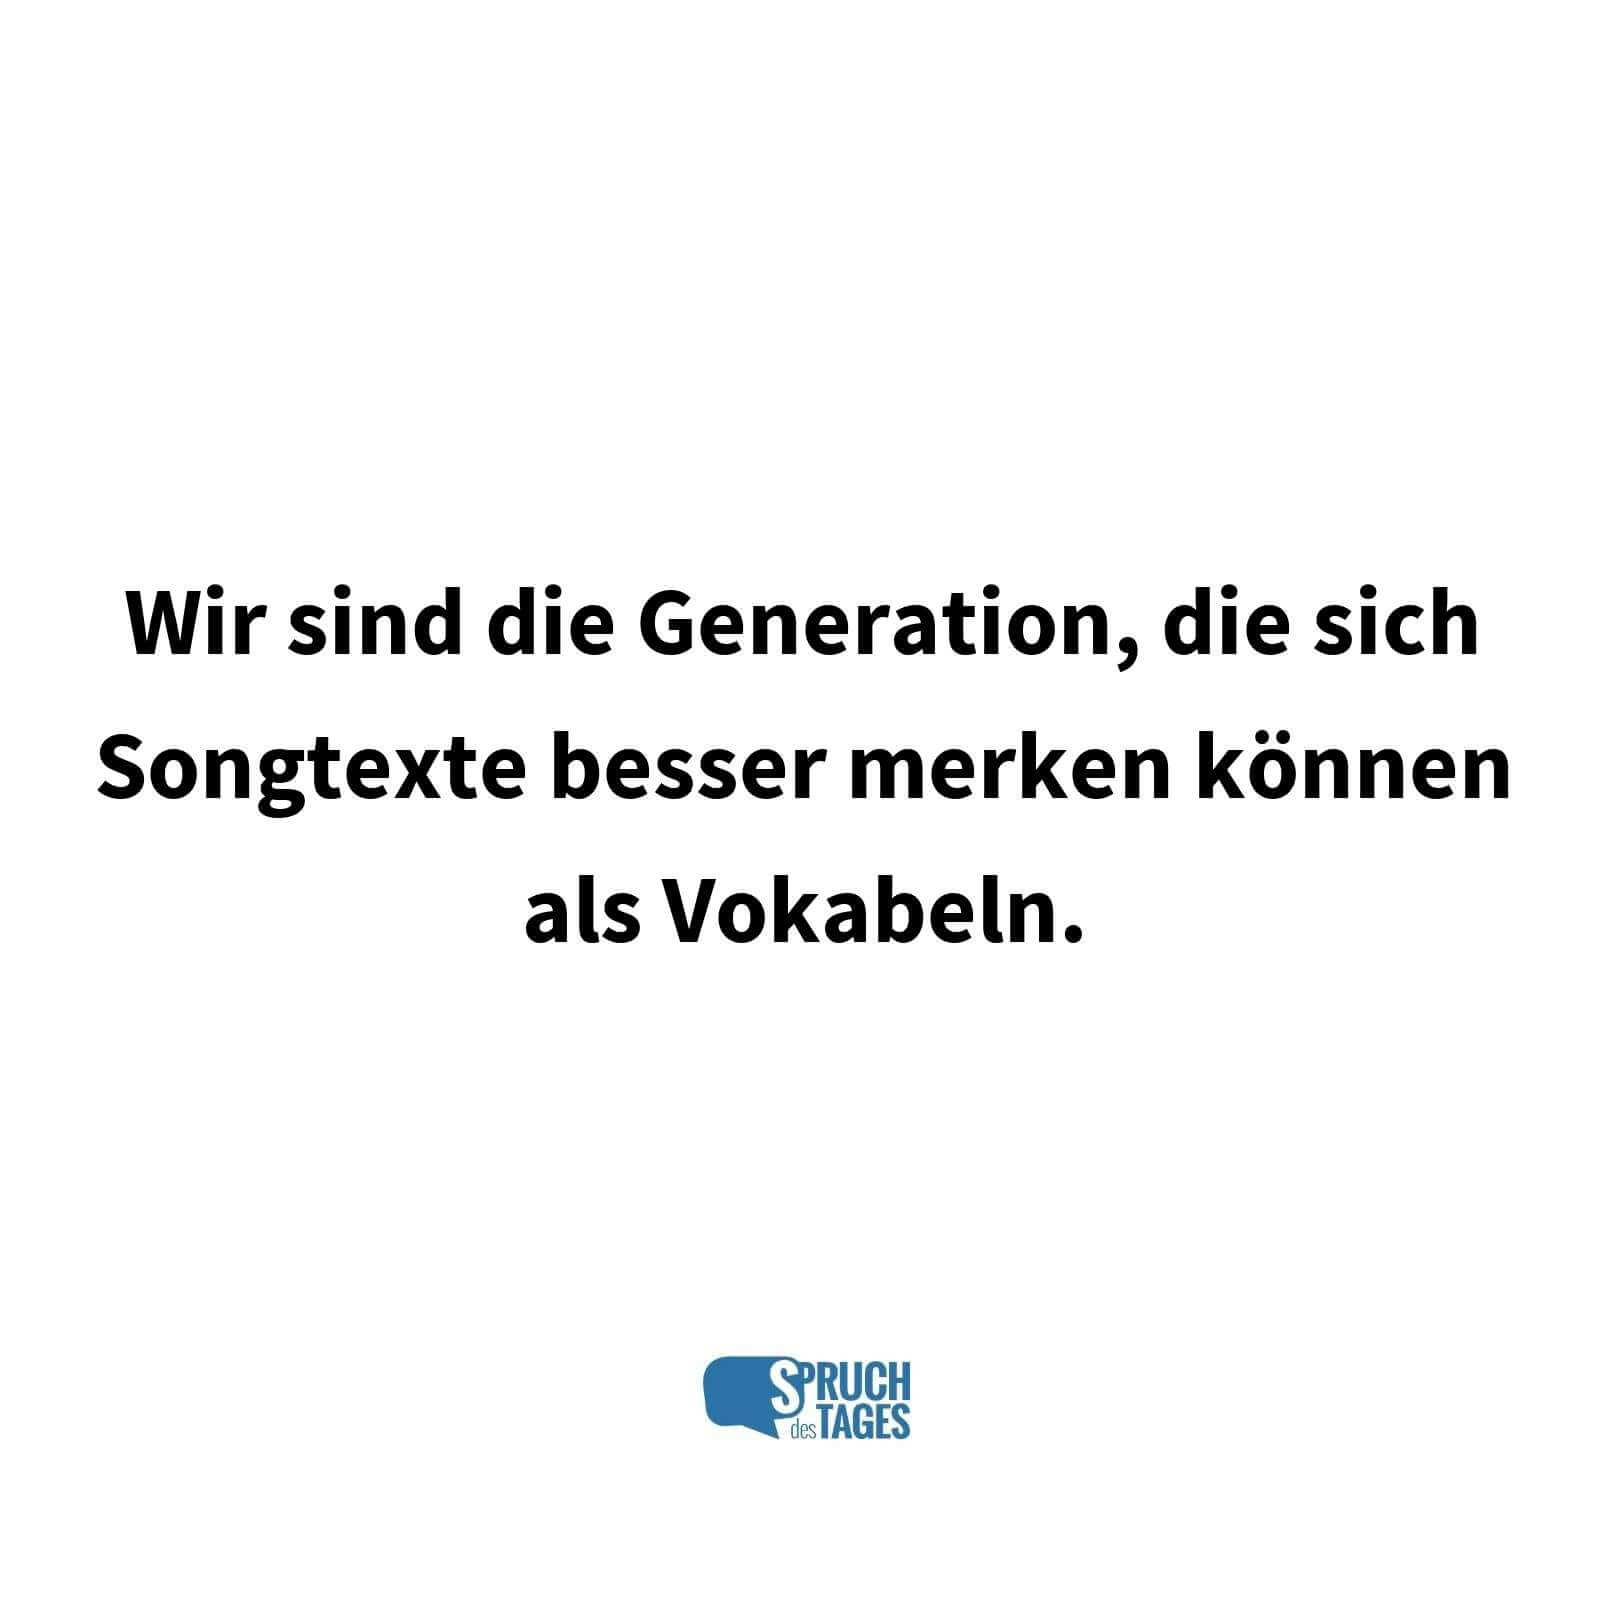 Wir sind die Generation, die sich Songtexte besser merken können als Vokabeln.